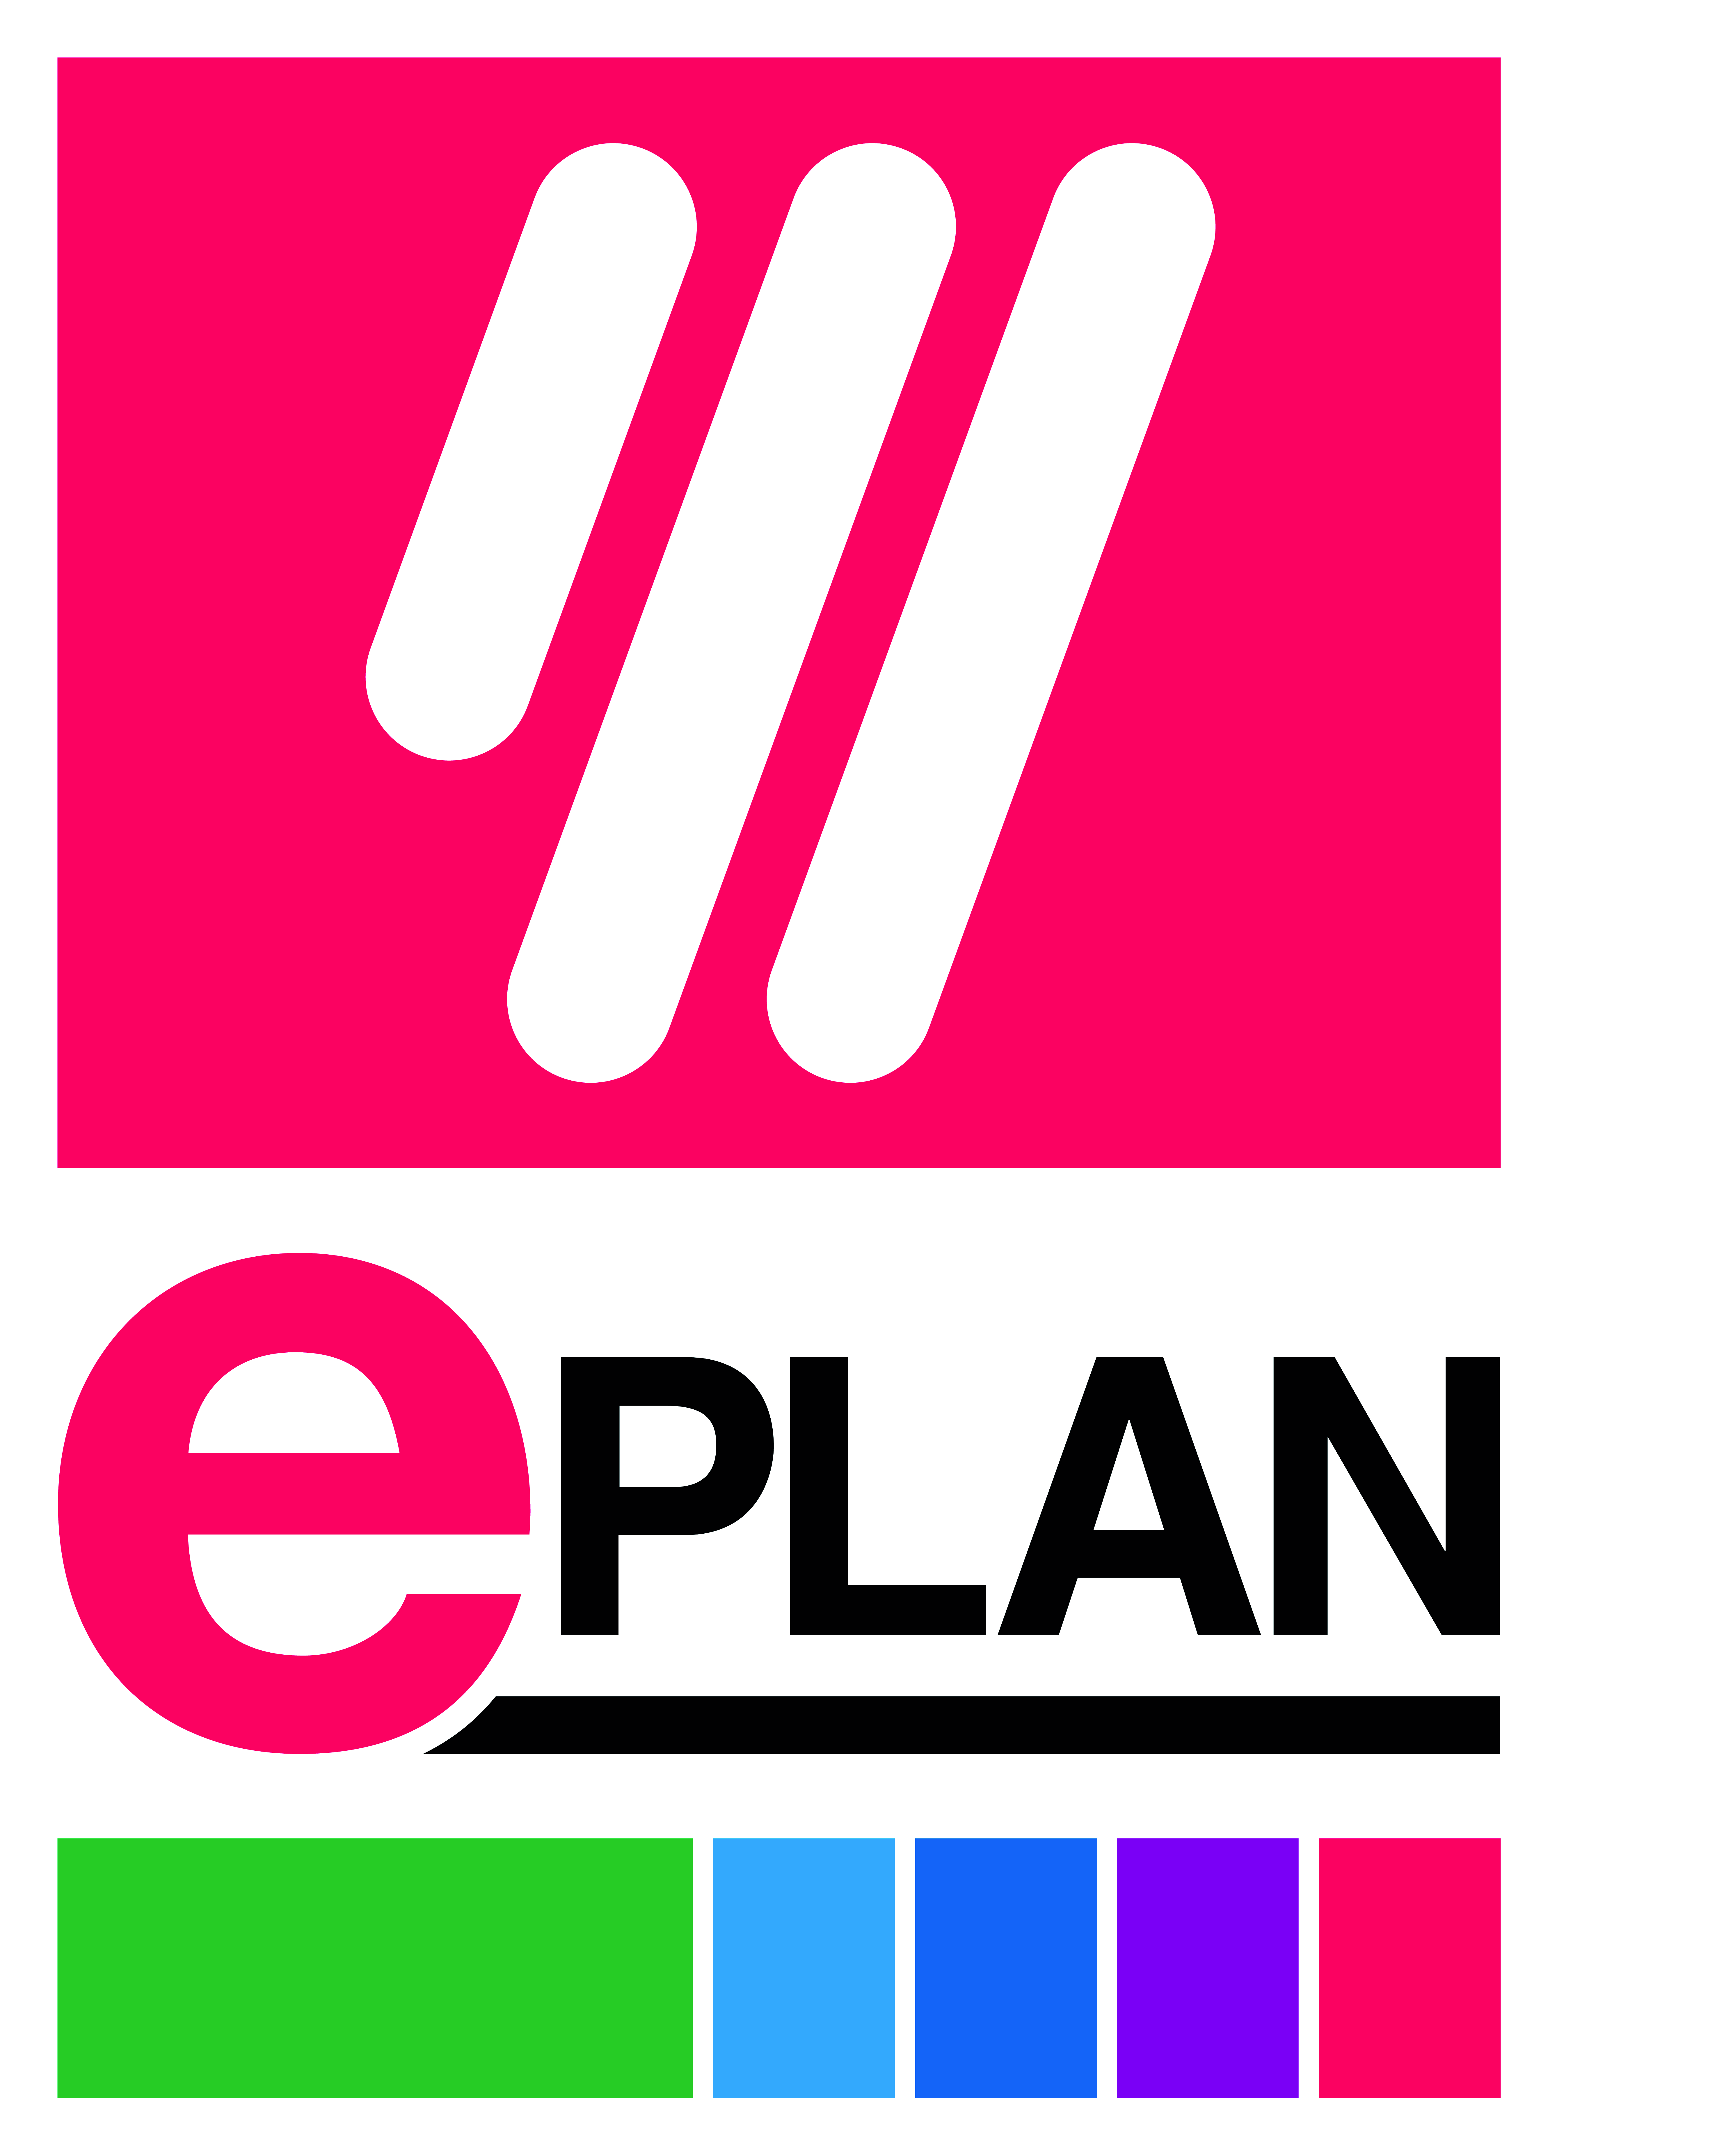 EPLAN Certified Technician (ECT)